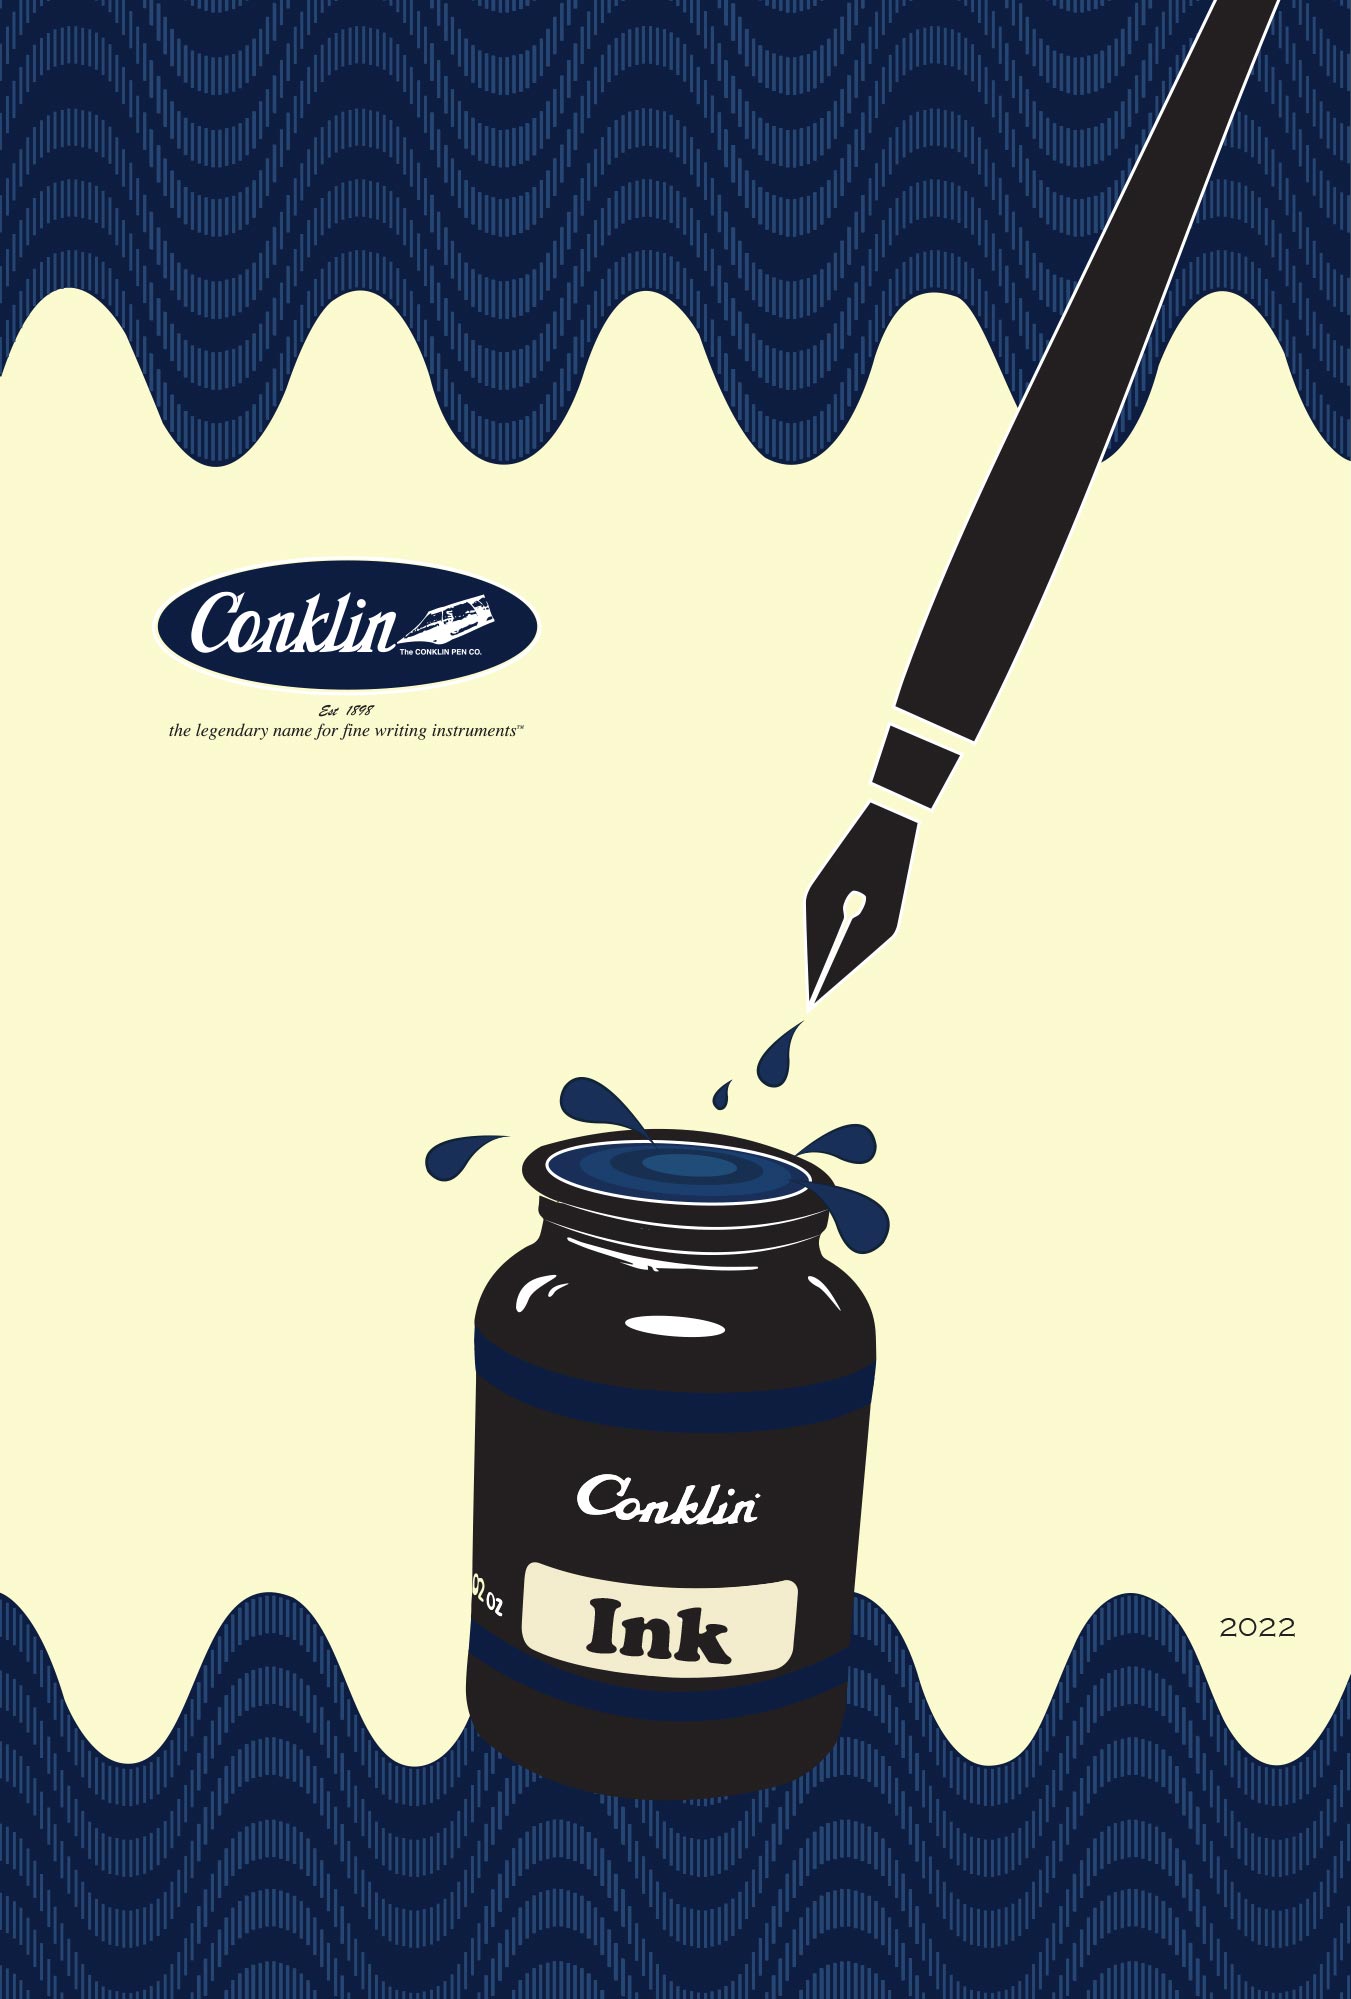 Catalog Conklin Ink 2022